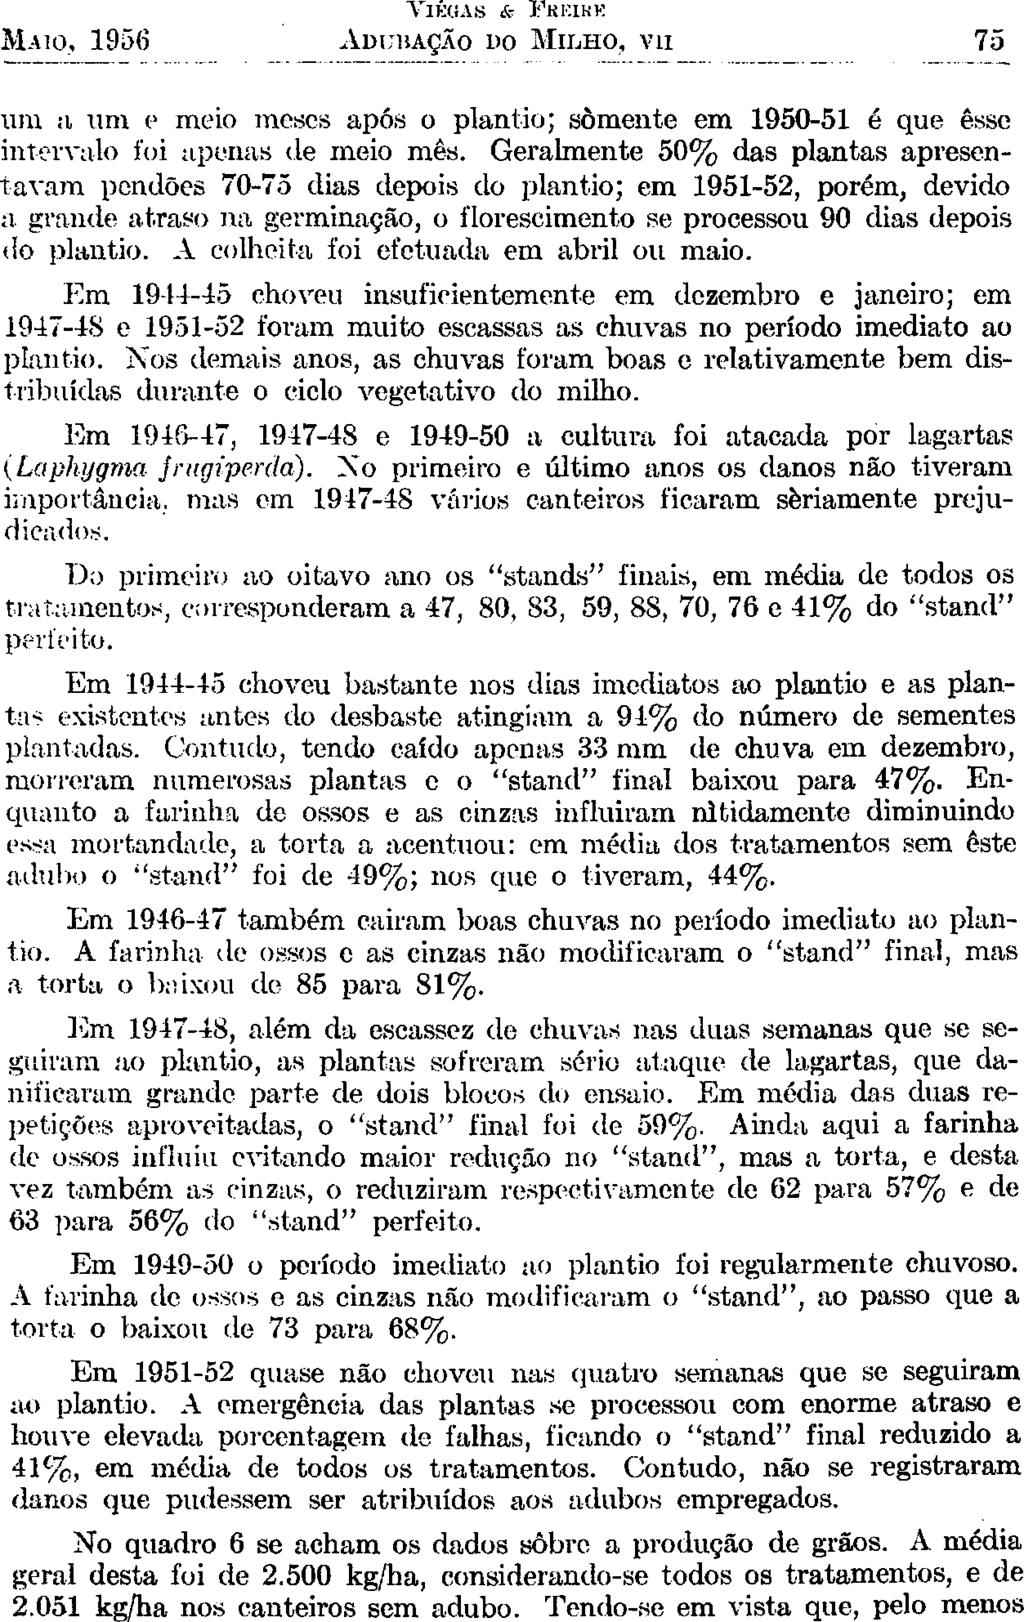 VIEGAS & FKKIKK MAIO, 1956 ADUBAÇÃO DO MILHO, VII 75 uni a um e meio meses após o plantio; somente em 1950-51 é que esse intervalo foi apenas de meio mês.